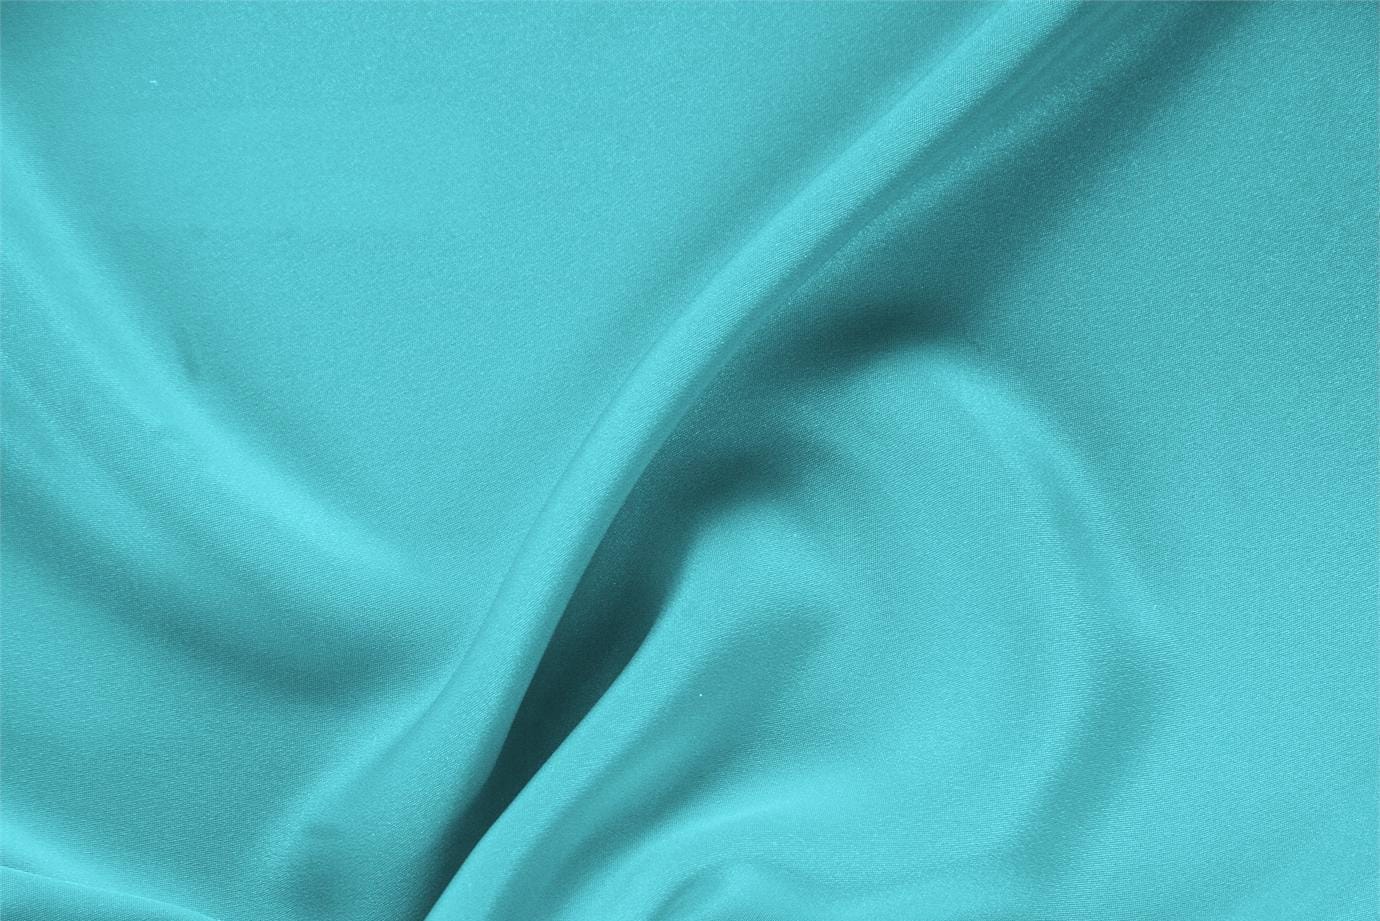 Tessuto Drap Blu Onda in Seta per abbigliamento